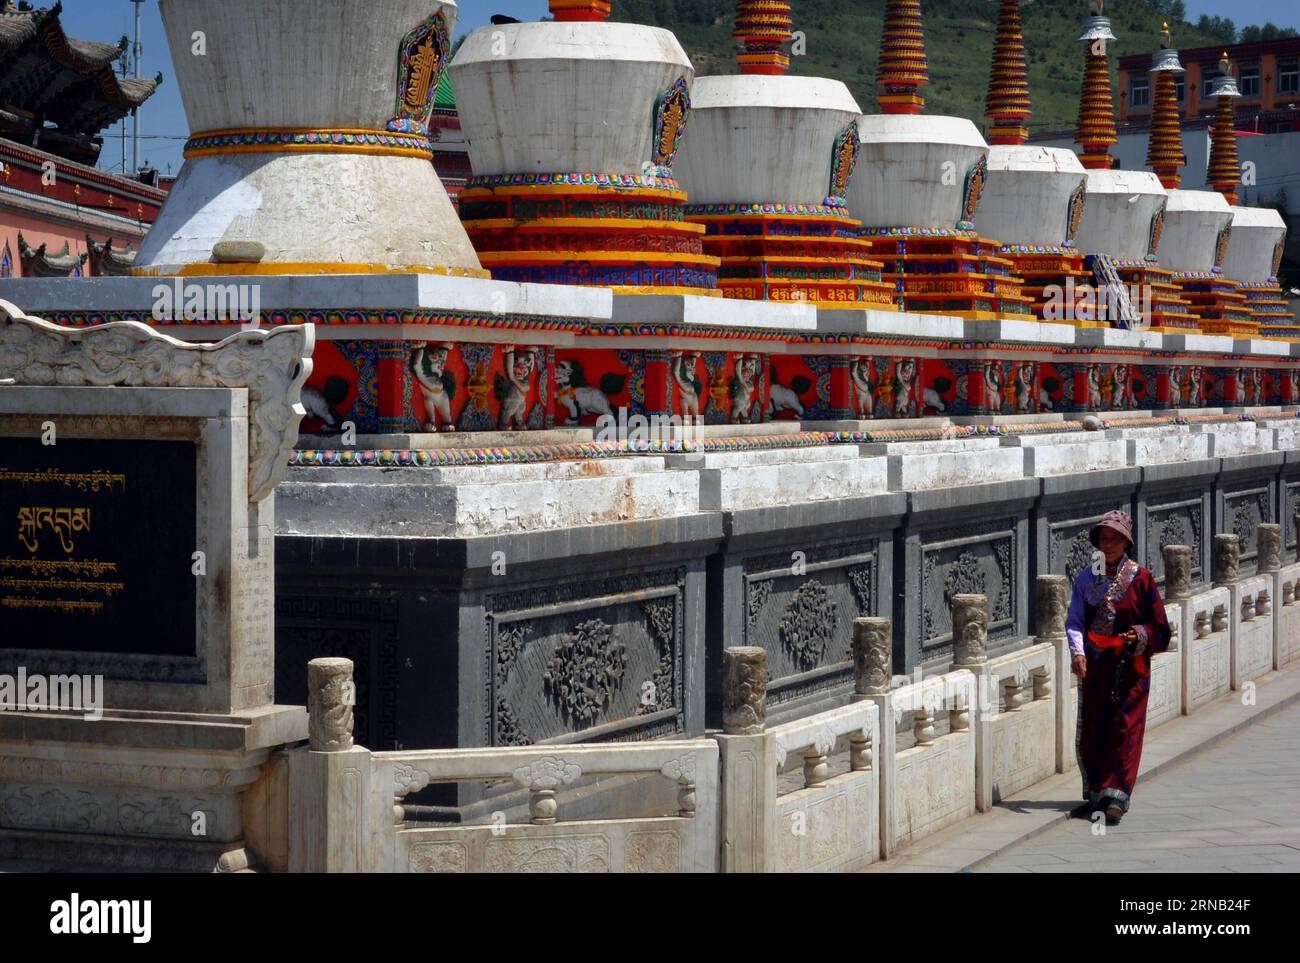 La foto scattata il 4 luglio 2014 mostra otto pagode buddiste al monastero di Ta er nella contea di Huangzhong, nella provincia del Qinghai della Cina nord-occidentale. Le pagode furono costruite nel 1776 della dinastia Qing (1644-1911). (Ry) CHINA-ANCIENT PAGODAS (CN) WangxSong PUBLICATIONxNOTxINxCHN foto scattata IL 4 luglio 2014 mostra otto pagode buddiste NEL monastero di Ta He nella contea di Huang Zhong nella provincia di Qinghai della Cina nord-occidentale le pagode sono state costruite nel 1776 della dinastia Qing 1644 1911 Ry China Ancient Pagodas CN WangxSong PUBLICATIONXNOTxINxCHN Foto Stock